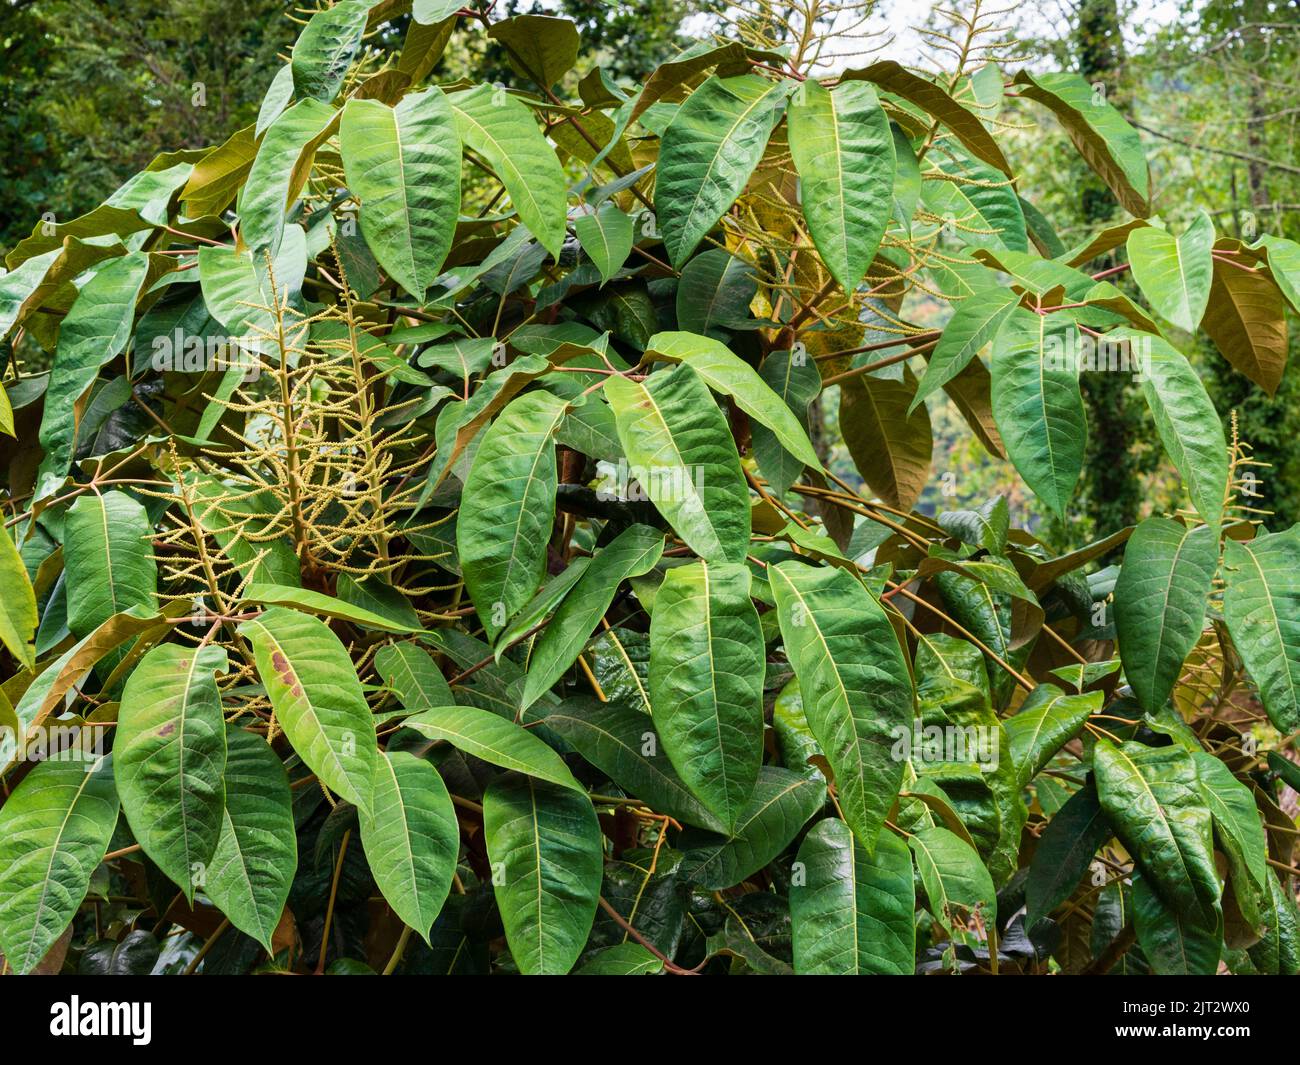 Hojas masivas con insurimum marrón y espigas de flores del exótico arbusto perennifolio Schefflera macrophylla Foto de stock